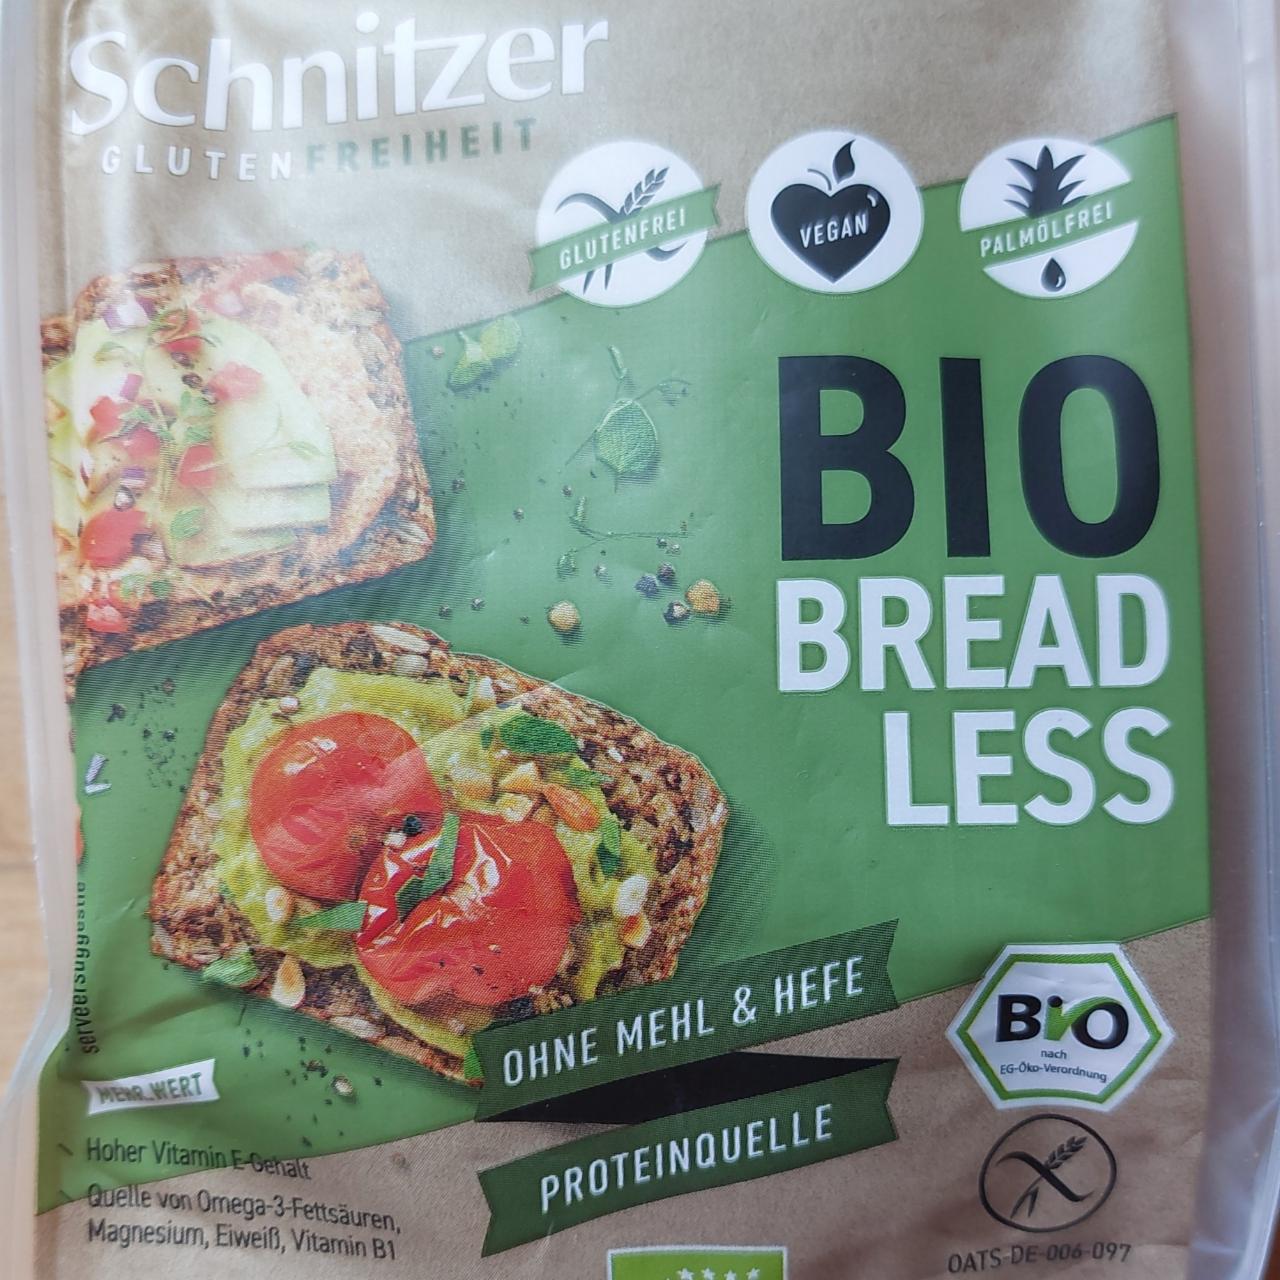 Fotografie - Bio bread less glutenfreiheit Schnitzer